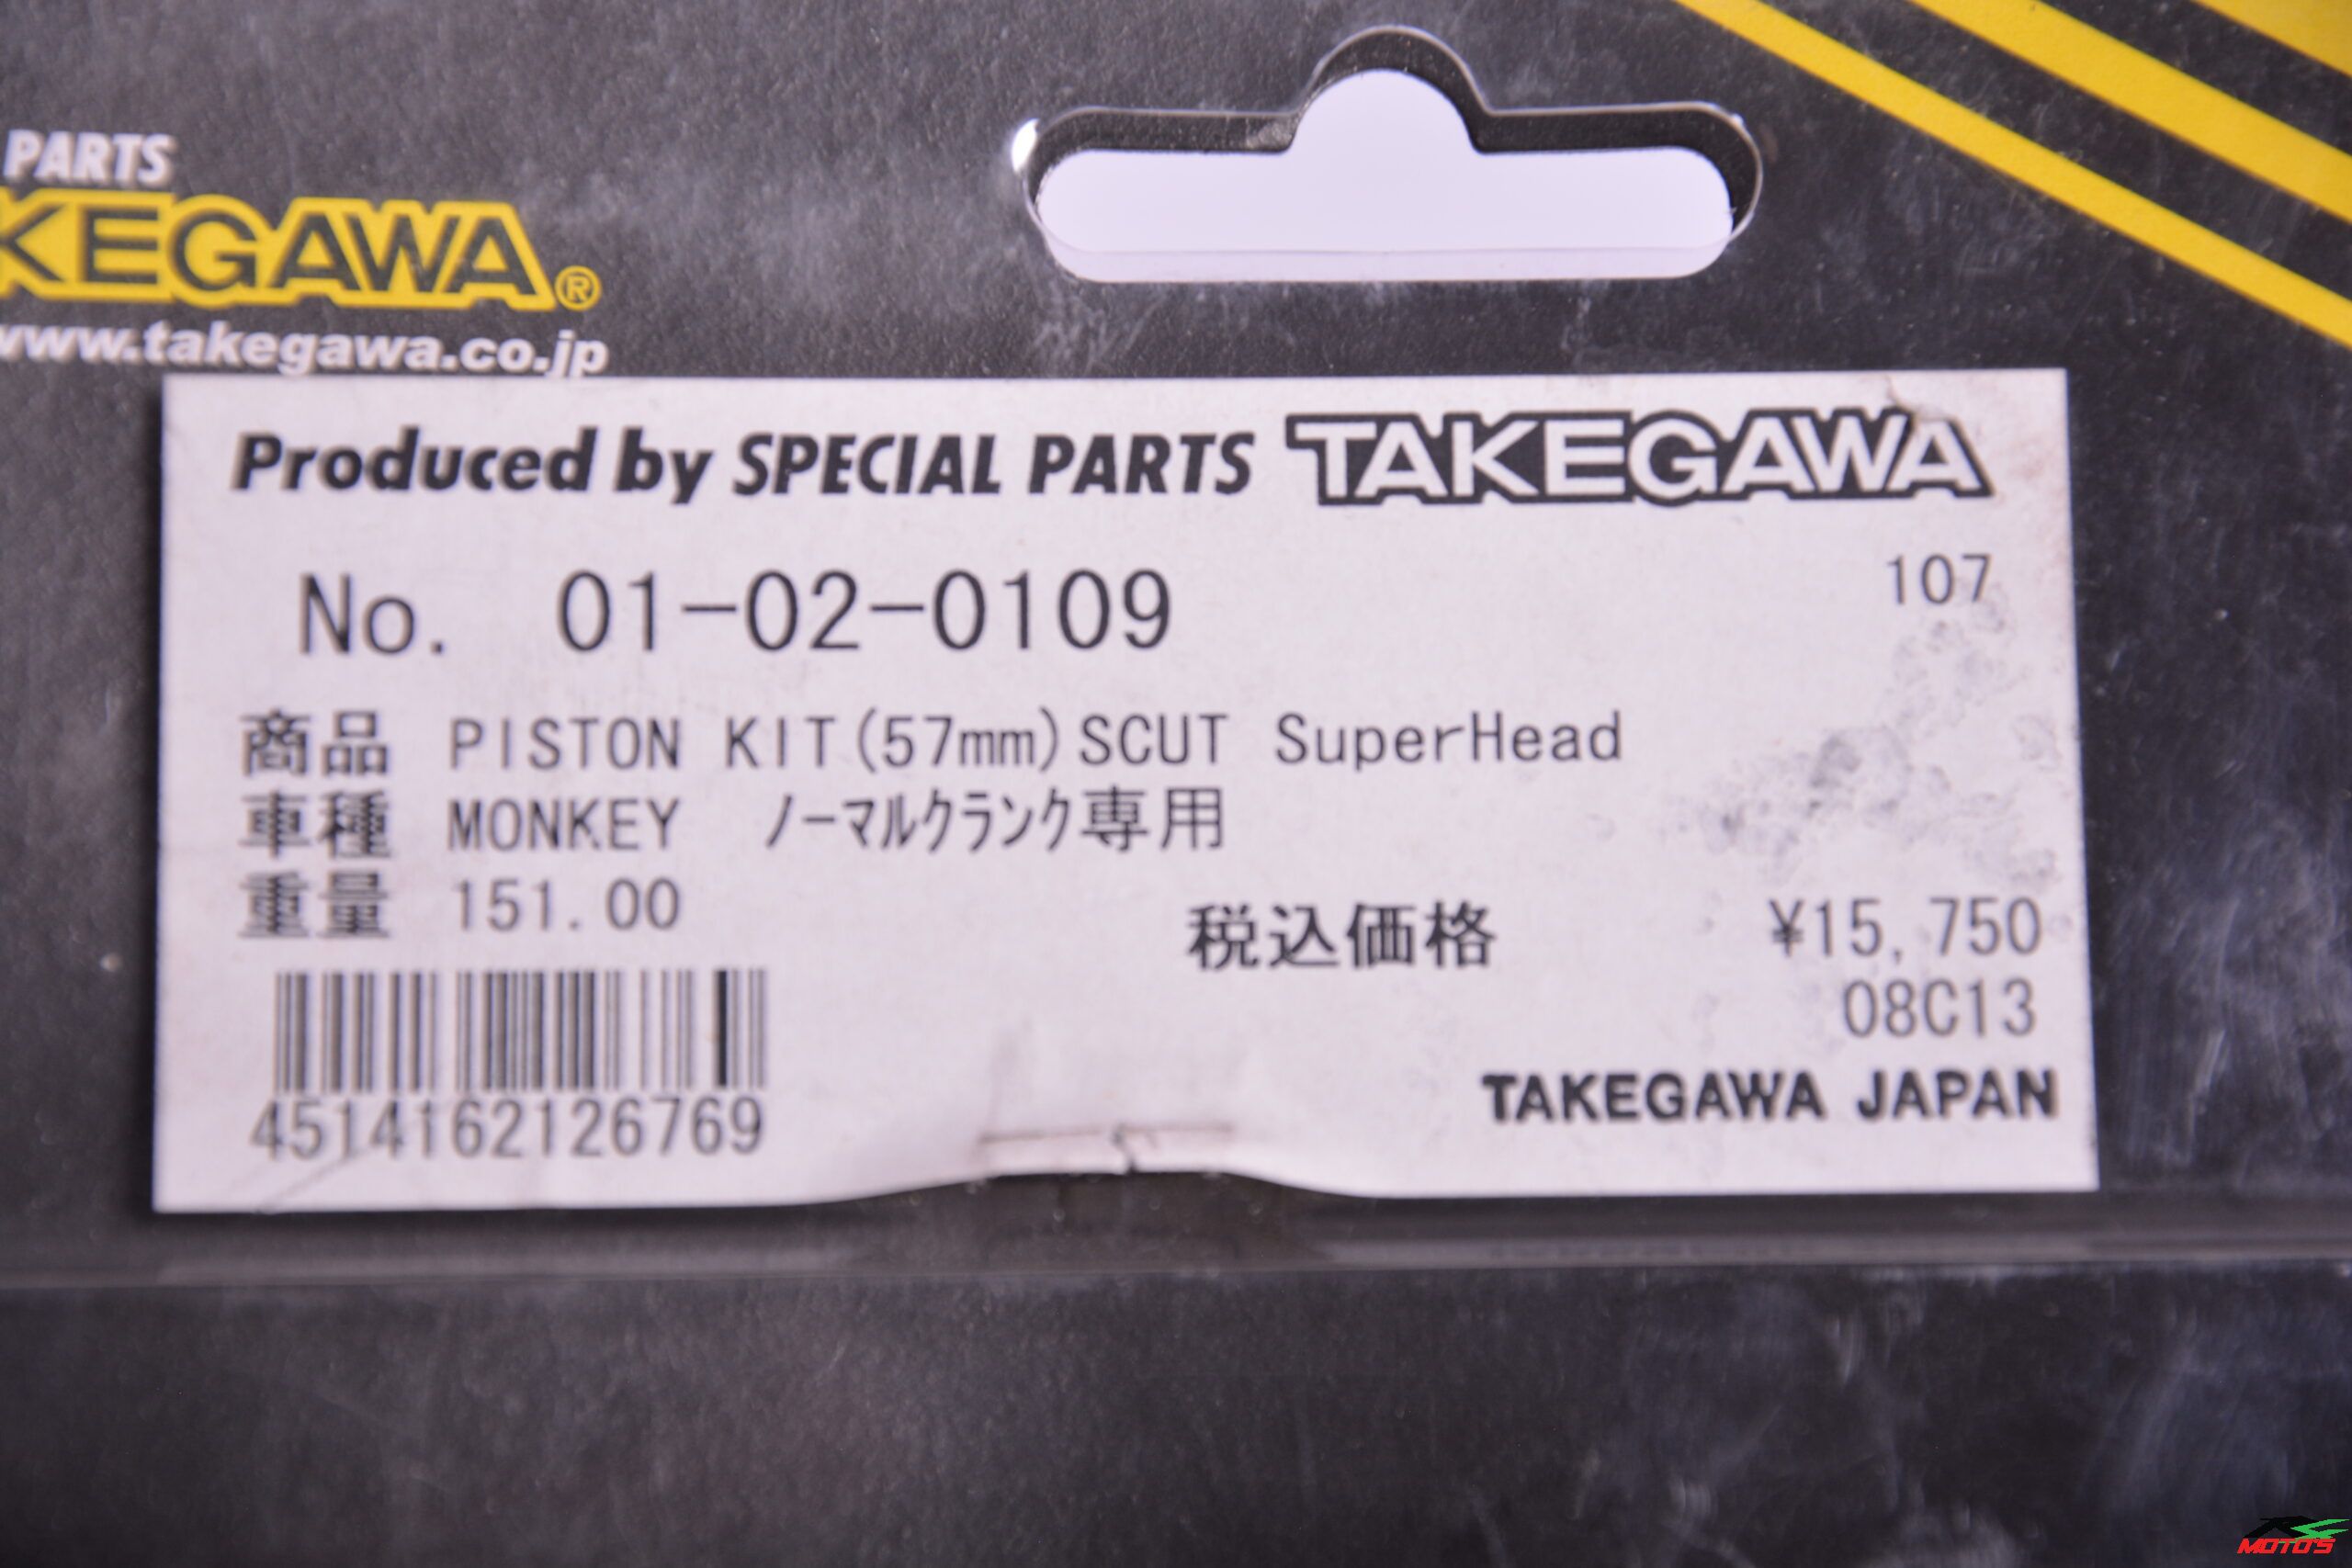 Takegawa Piston Kit (57mm) Scut Superhead+r Monkey, Gollira